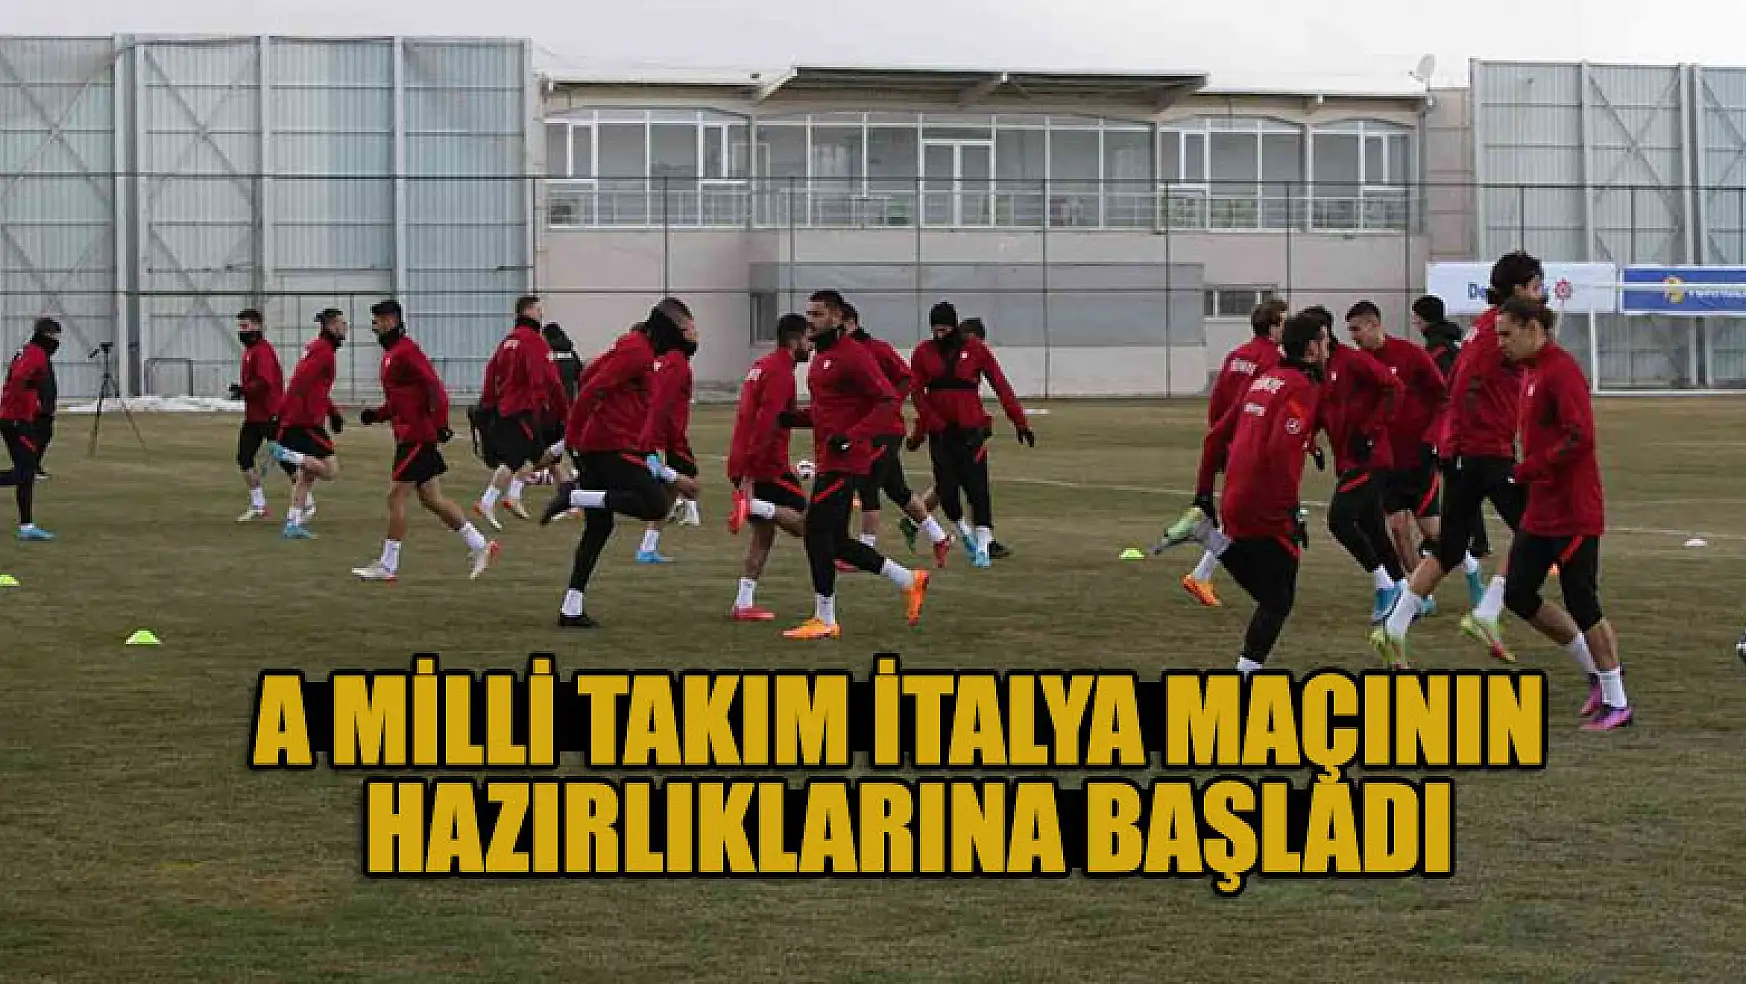 A Milli Takım, Konya'da İtalya maçının hazırlıklarına başladı